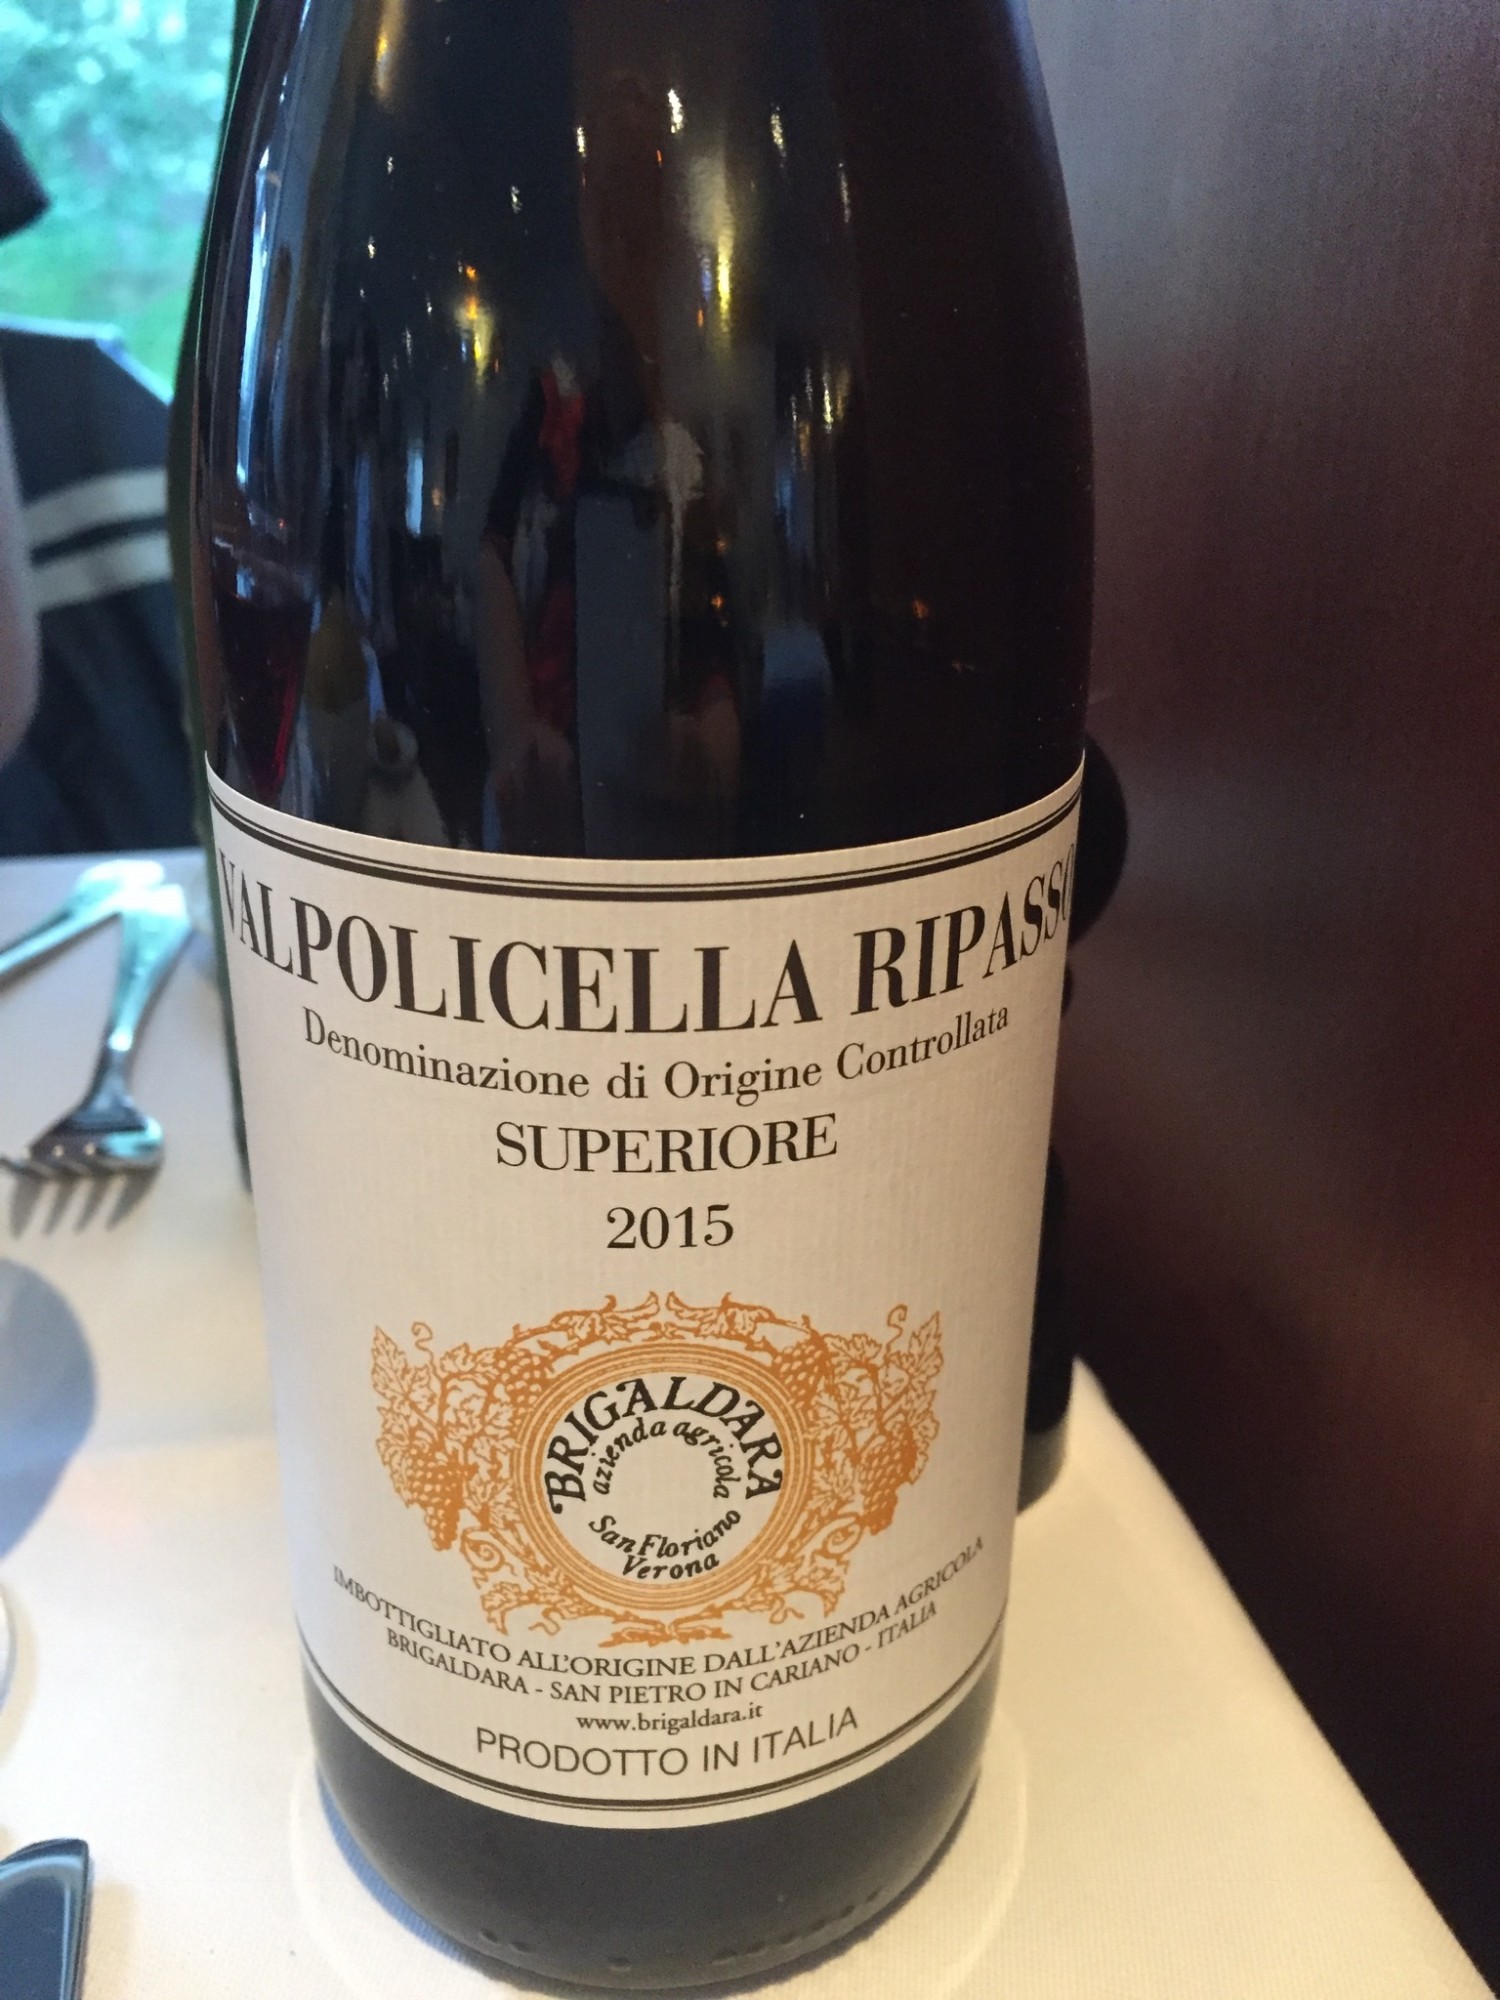 Ripasso Superiore 2015 - Brigaldara. En dejlig kraftig rødvin med smag af kirsebær, hindbær, kanel og chokolade.